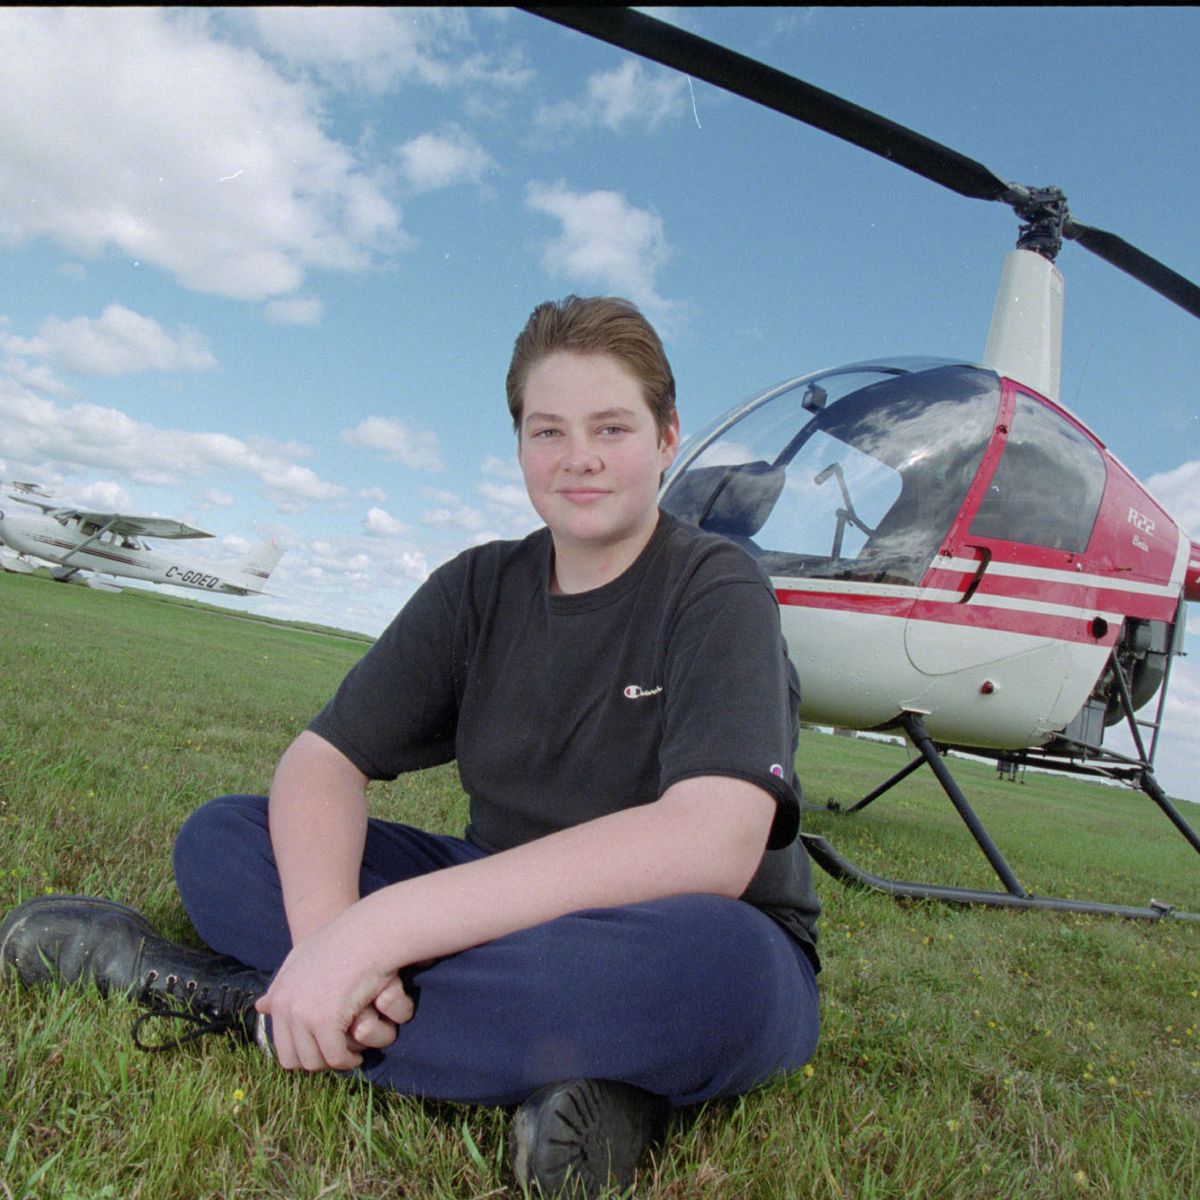 Dellen Millard pileteaba un helicóptero a los 14 años (Contenido no licenciado)